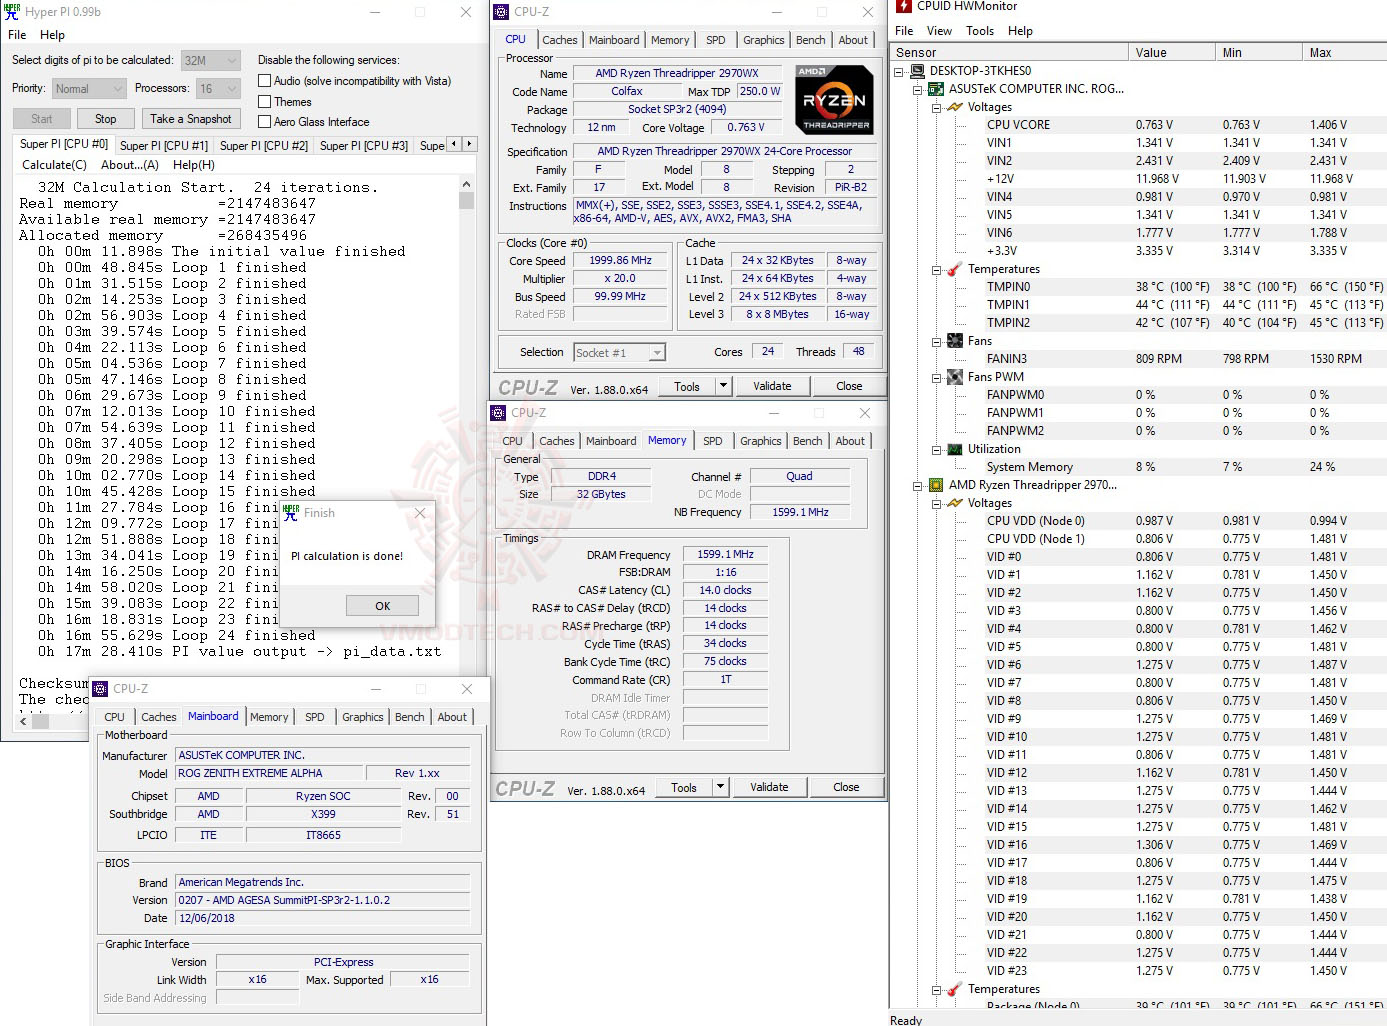 h32 1 AMD RYZEN THREADRIPPER 2970WX PROCESSOR REVIEW